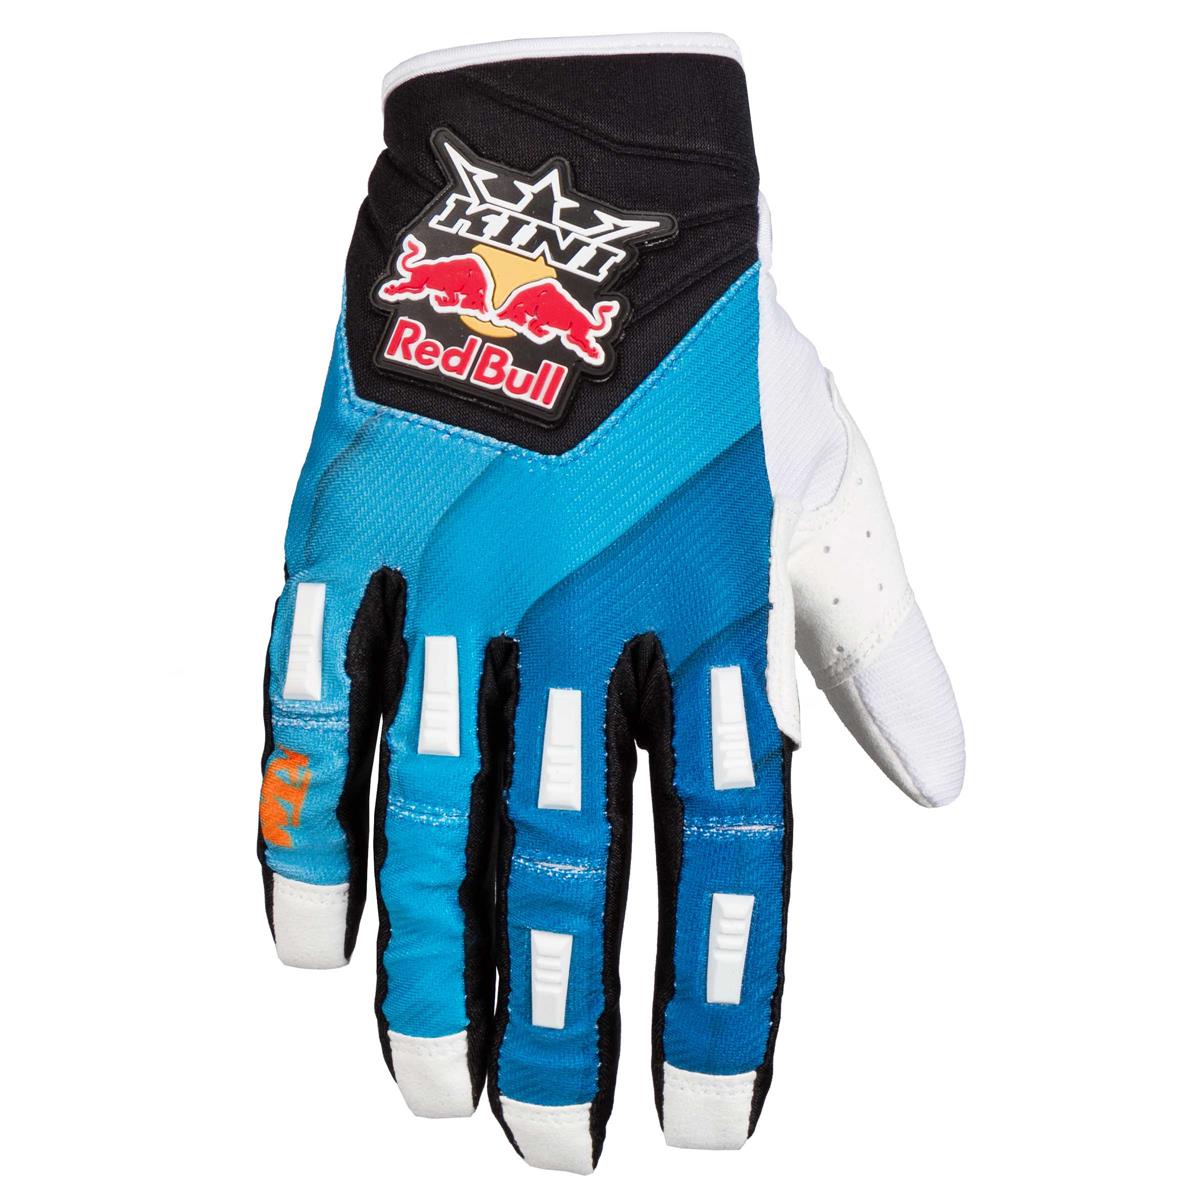 Kini Red Bull Gloves Vintage Blue/Black/White